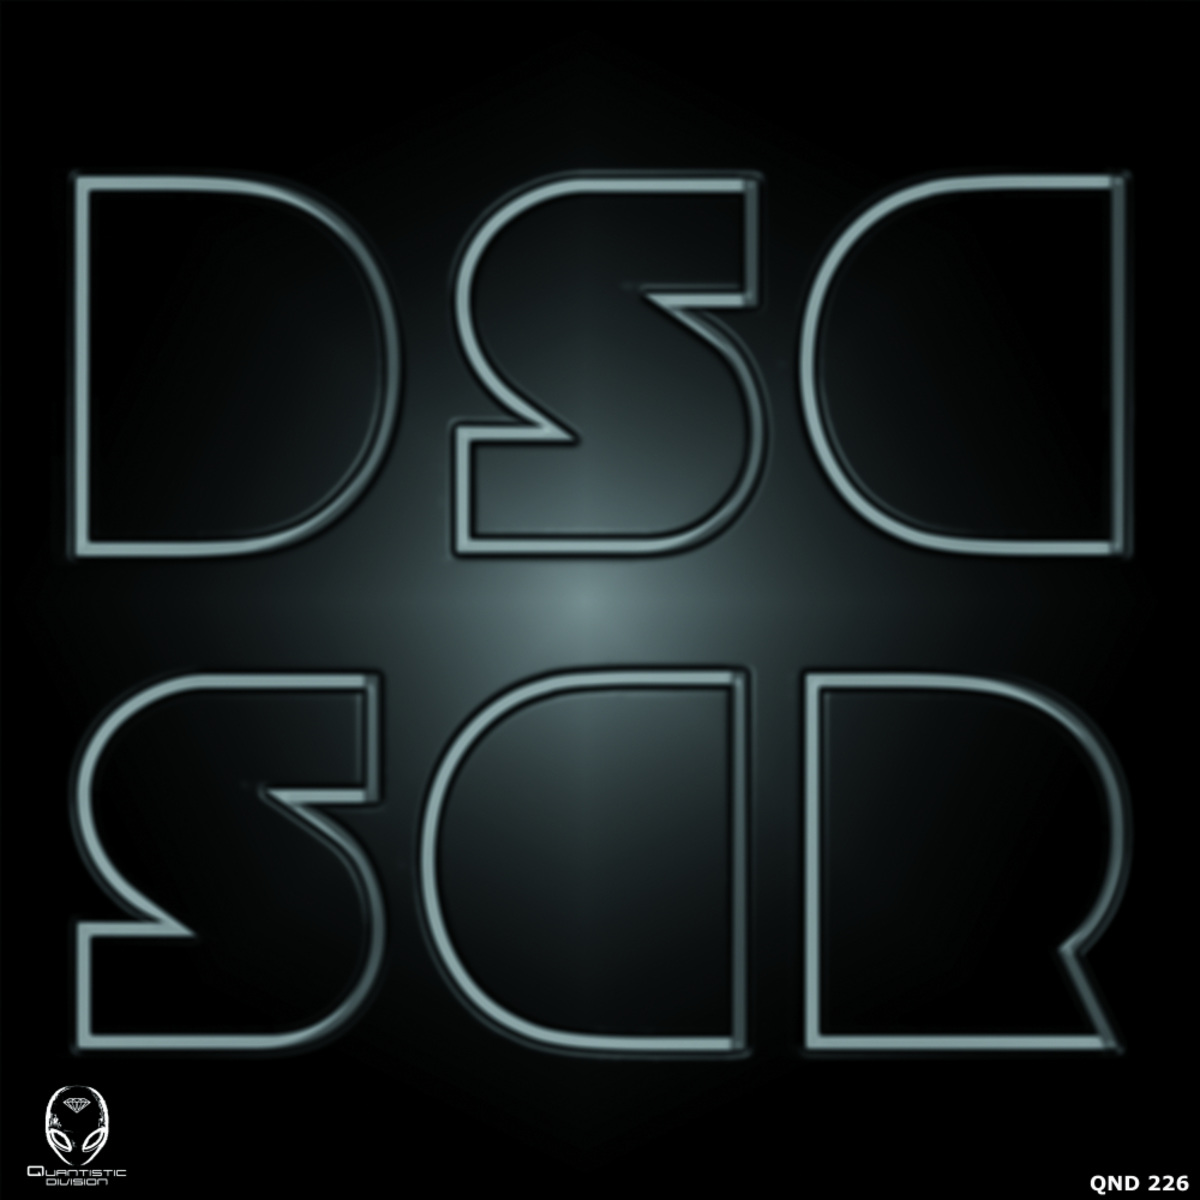 Discoscuro - Discoscuro / Quantistic Division